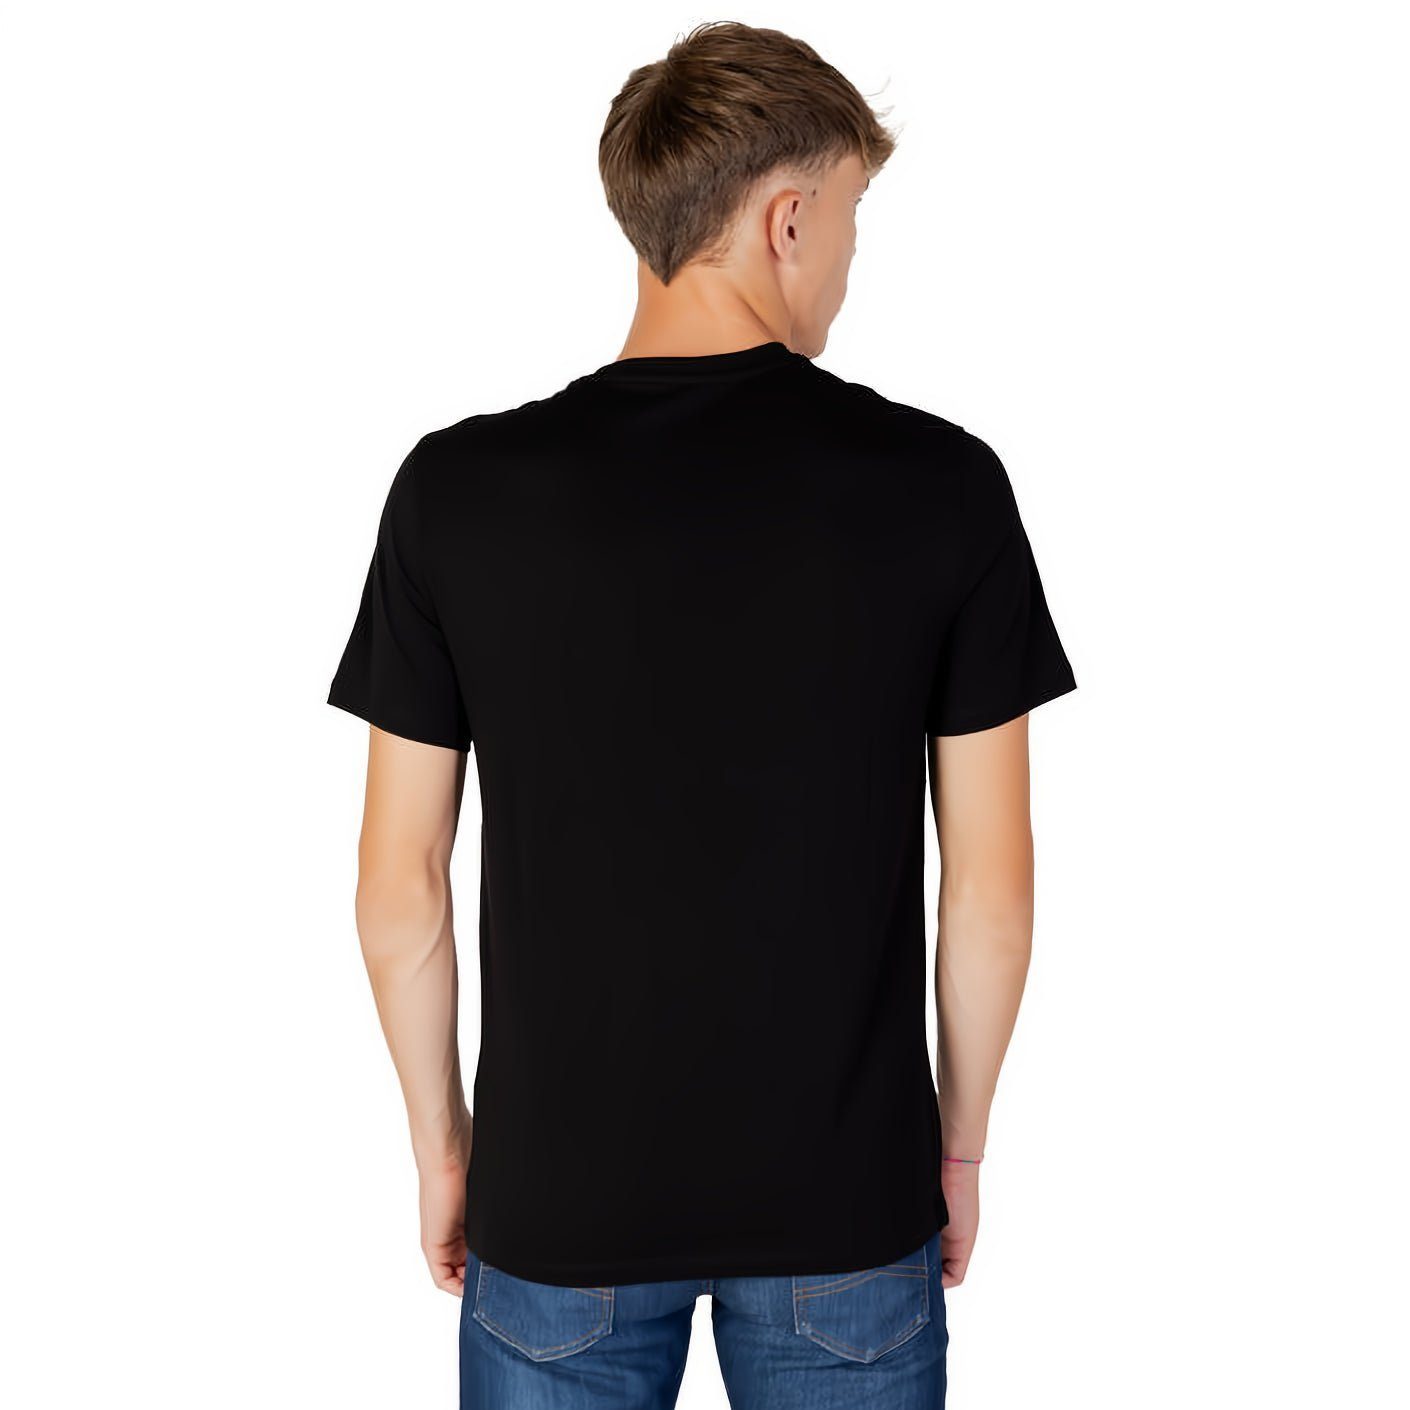 ARMANI EXCHANGE T-Shirt kurzarm, Rundhals, für Ihre Kleidungskollektion! ein Must-Have